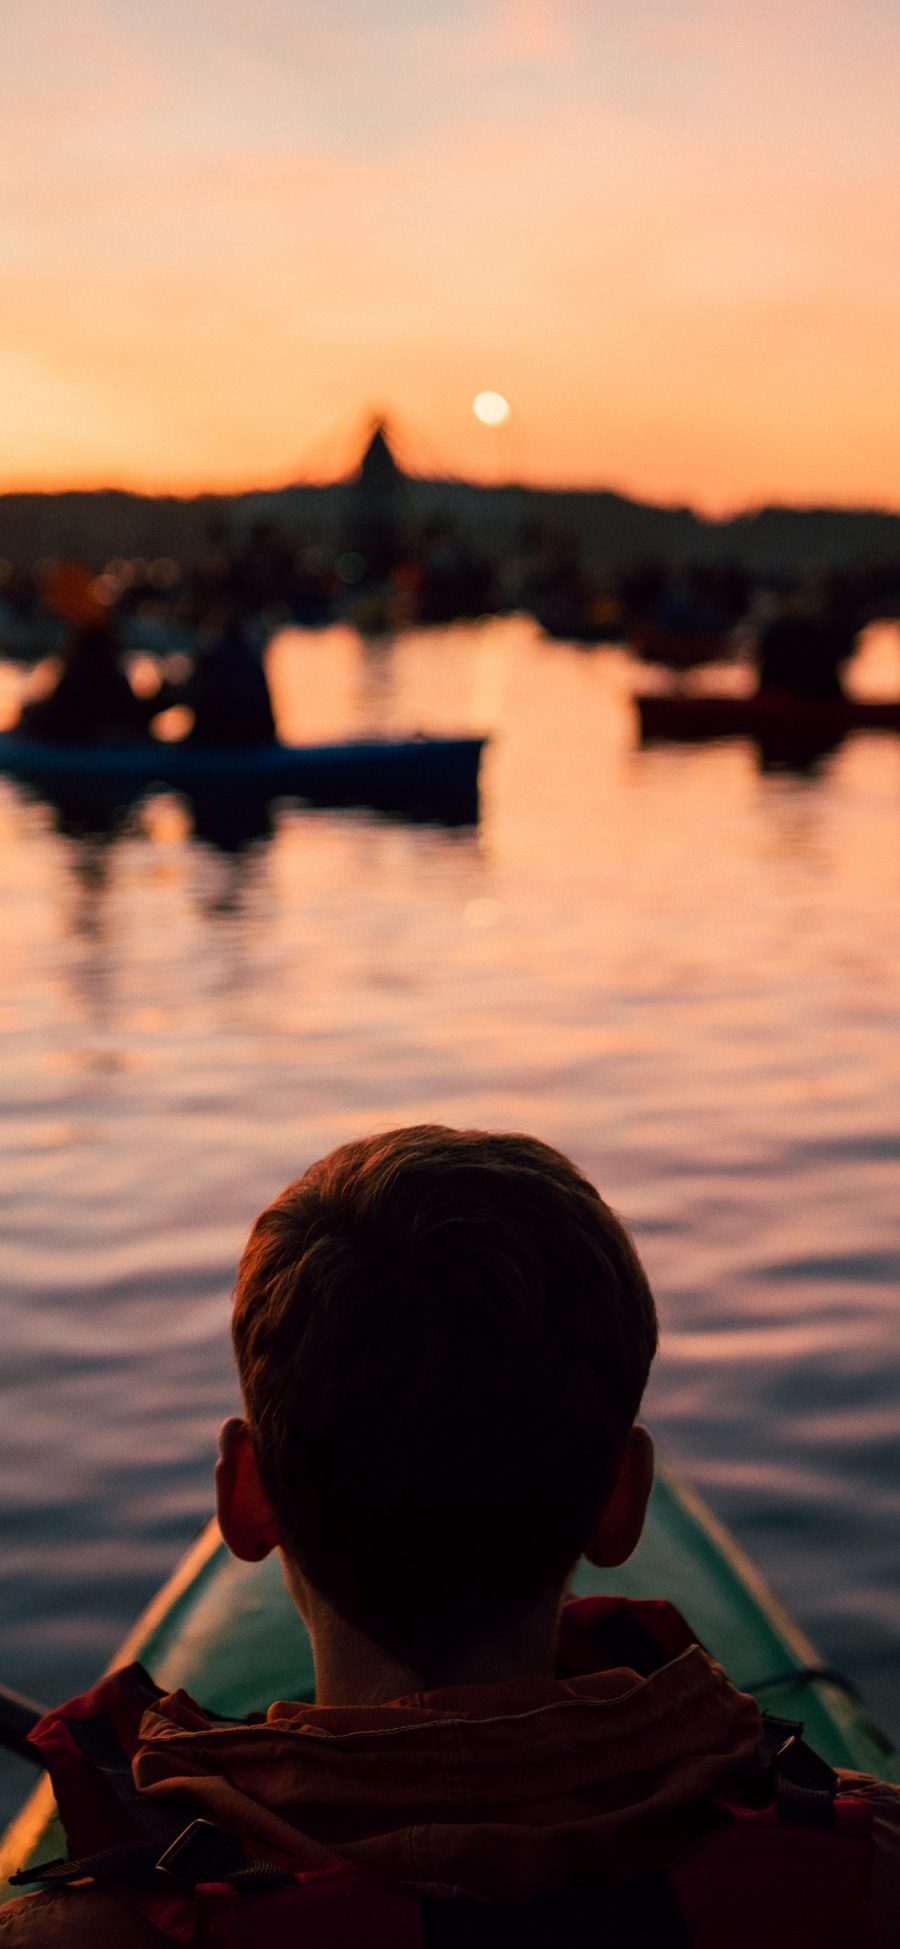 [2436×1125]船 小男孩 背影 黄昏 海面 苹果手机壁纸图片